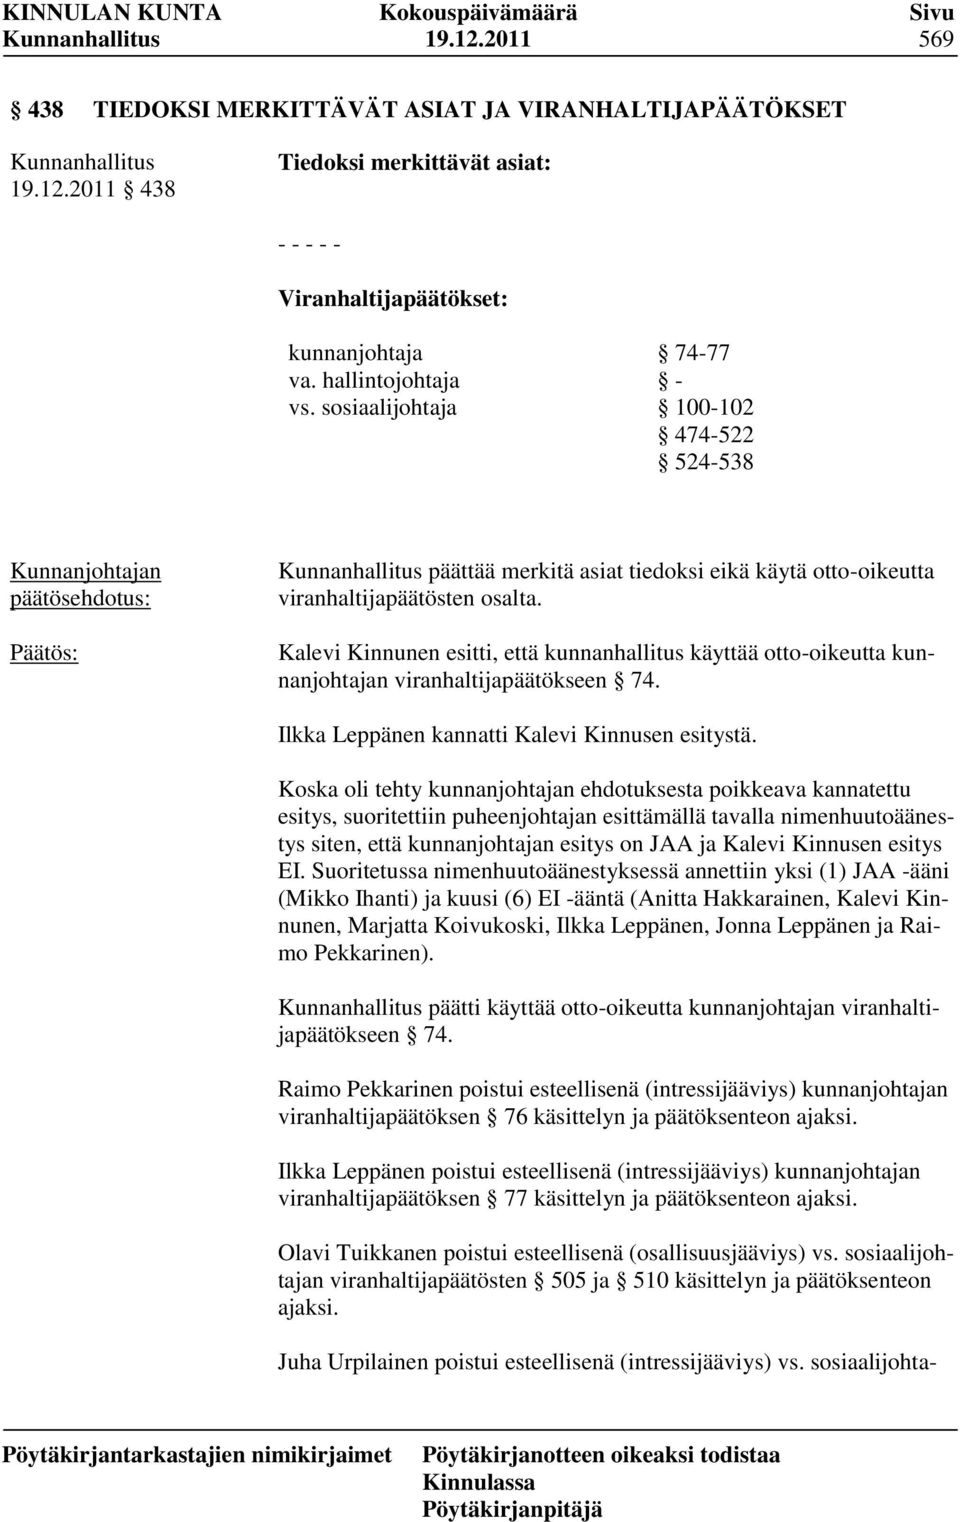 Kalevi Kinnunen esitti, että kunnanhallitus käyttää otto-oikeutta kunnanjohtajan viranhaltijapäätökseen 74. Ilkka Leppänen kannatti Kalevi Kinnusen esitystä.